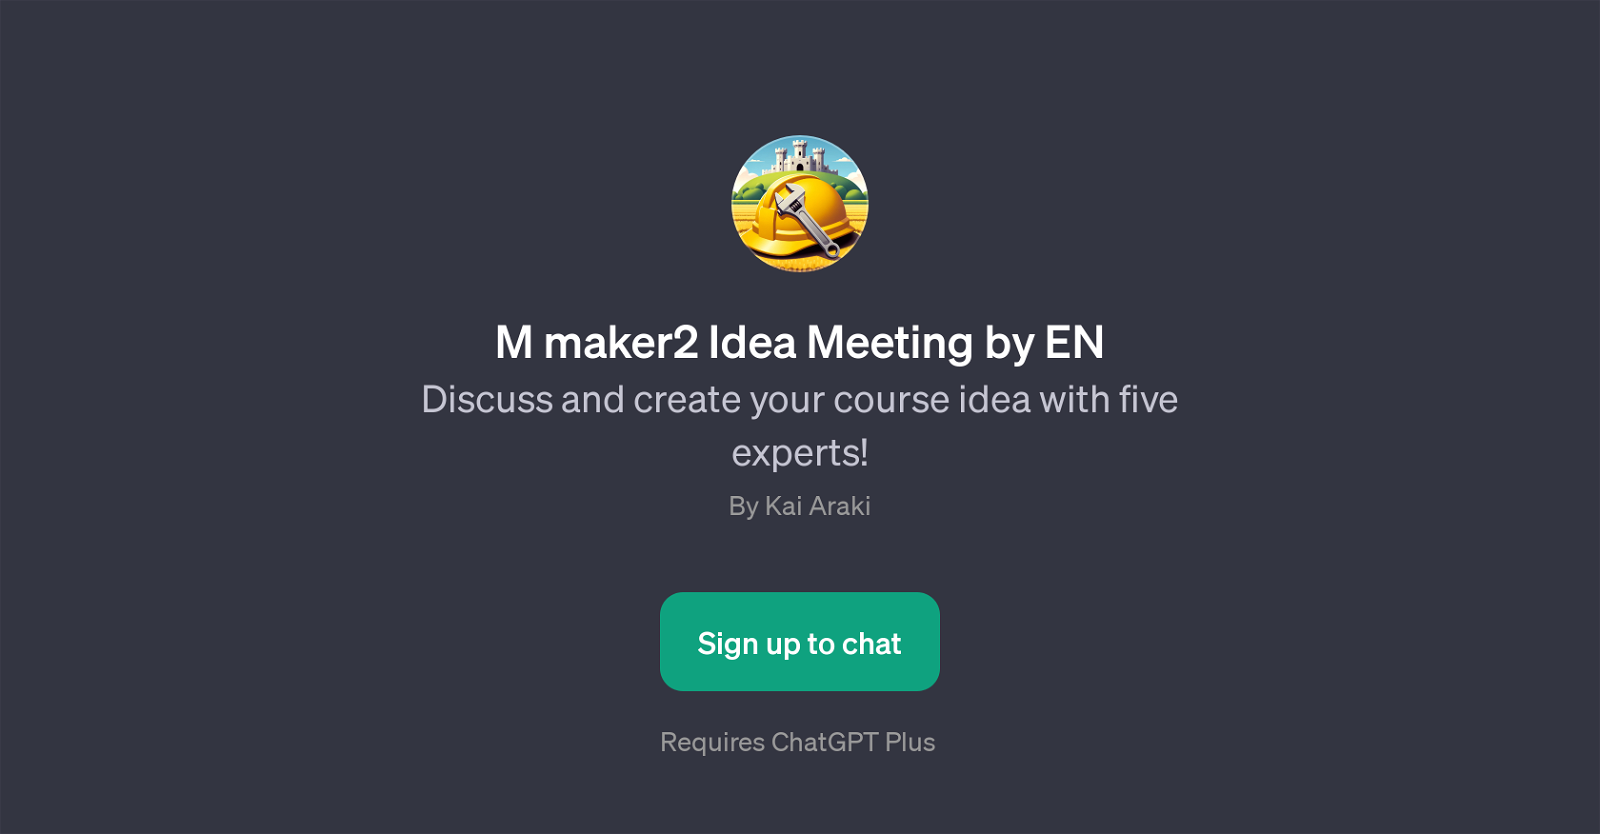 M maker2 Idea Meeting by EN website